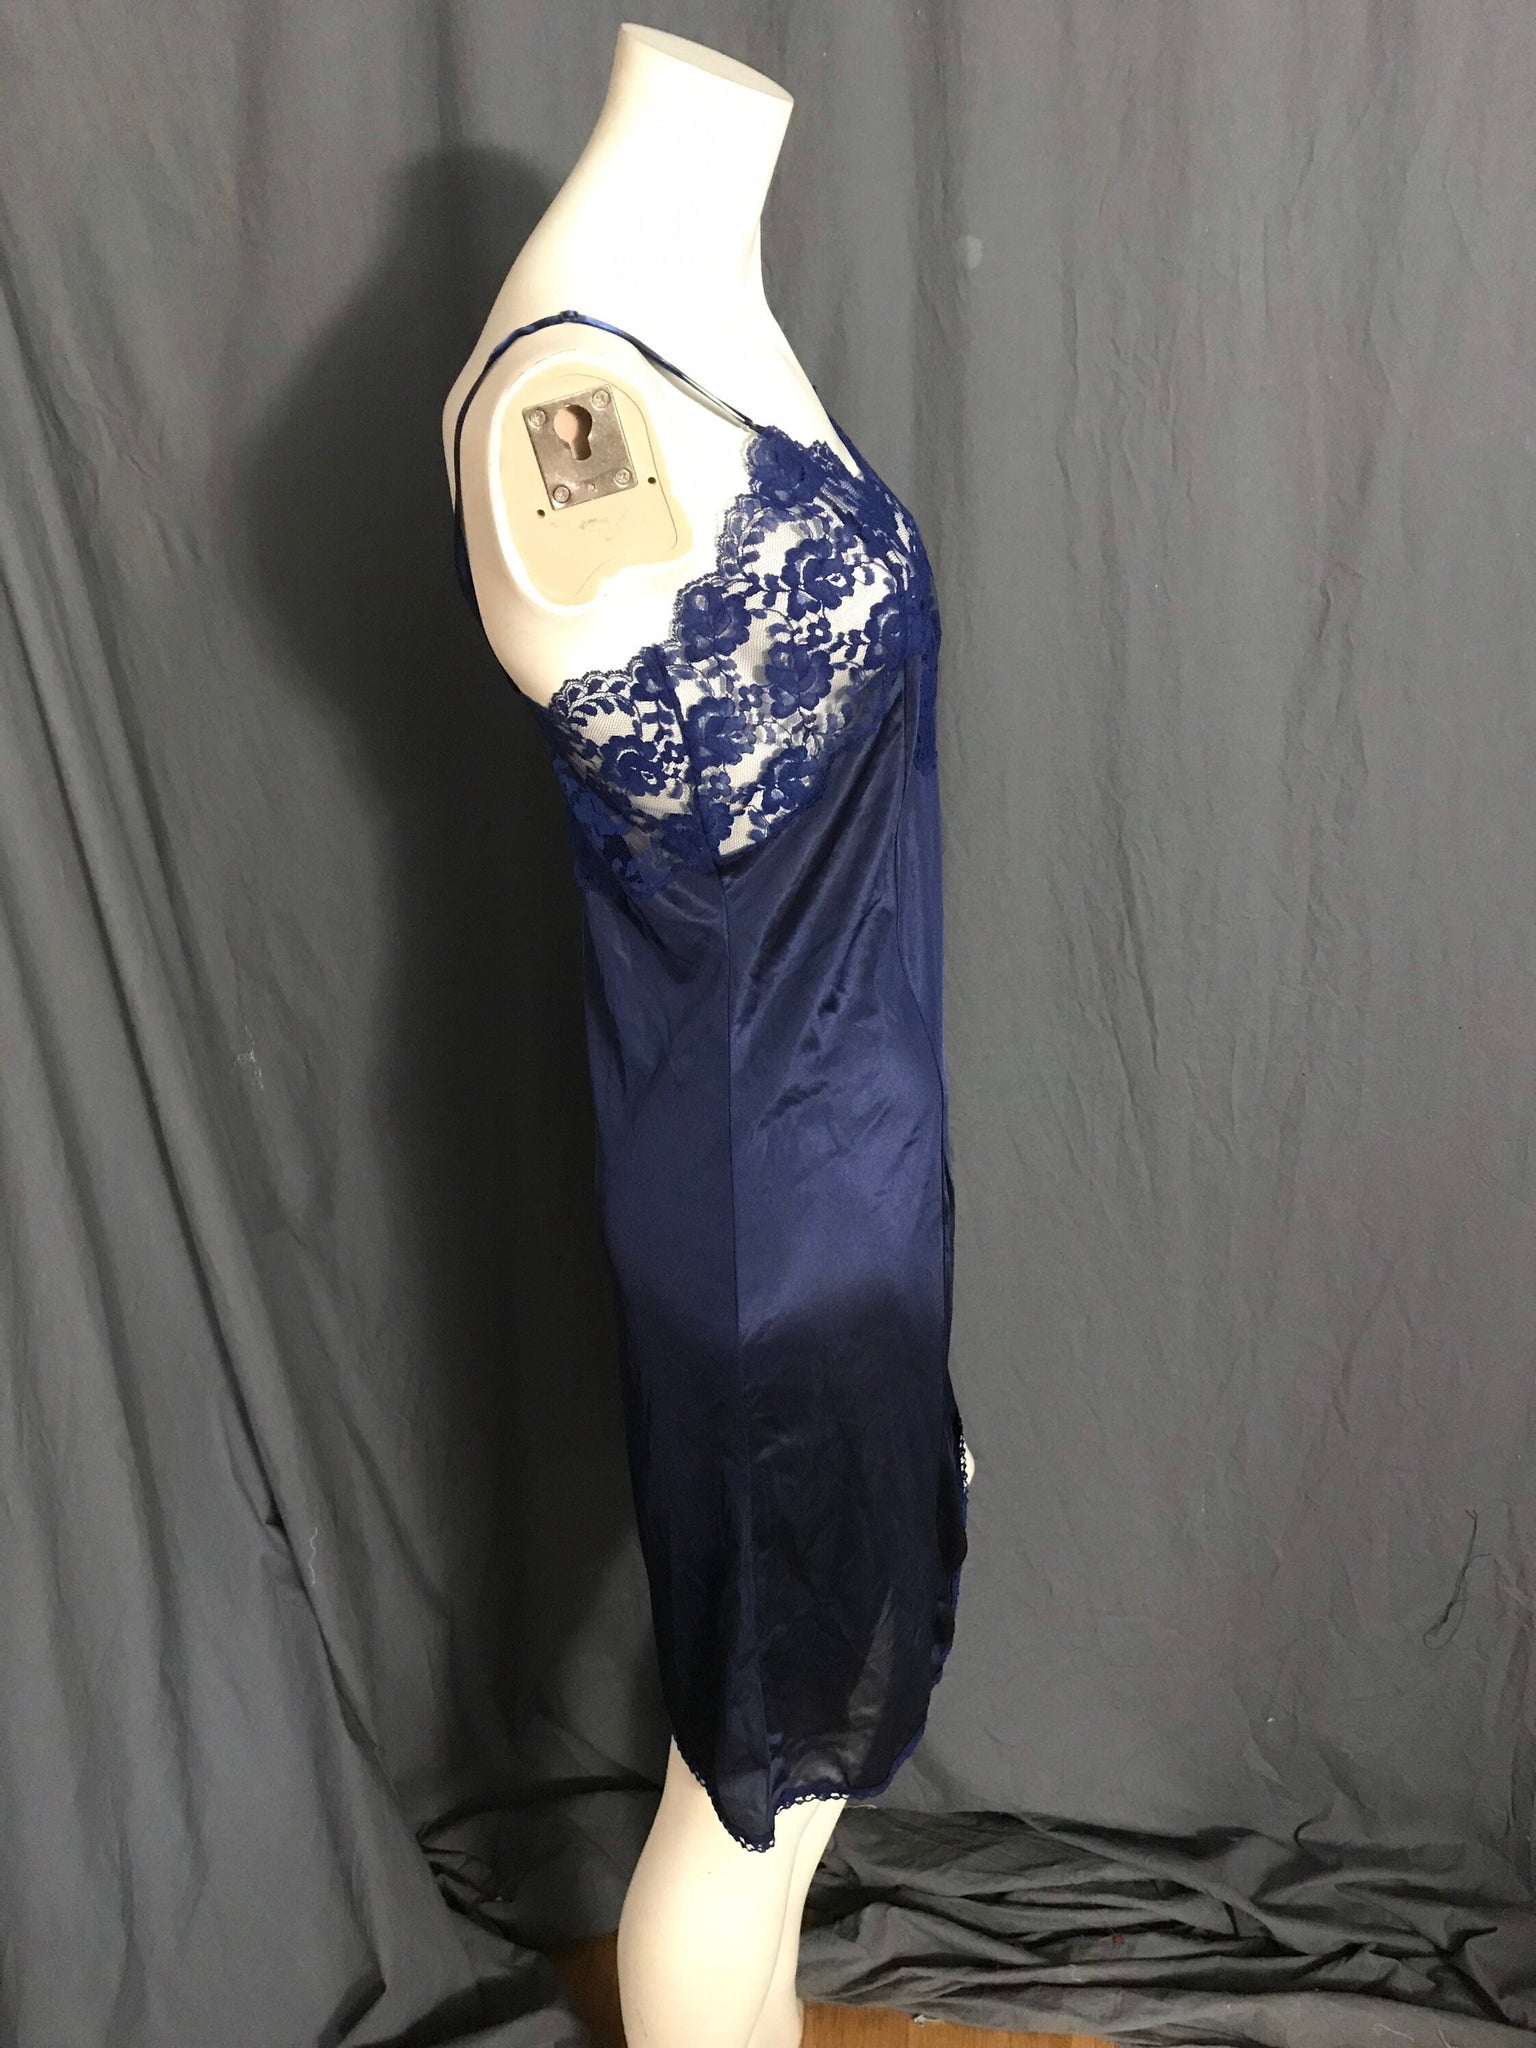 Vintage navy blue La Tendress full slip 32 lingerie M